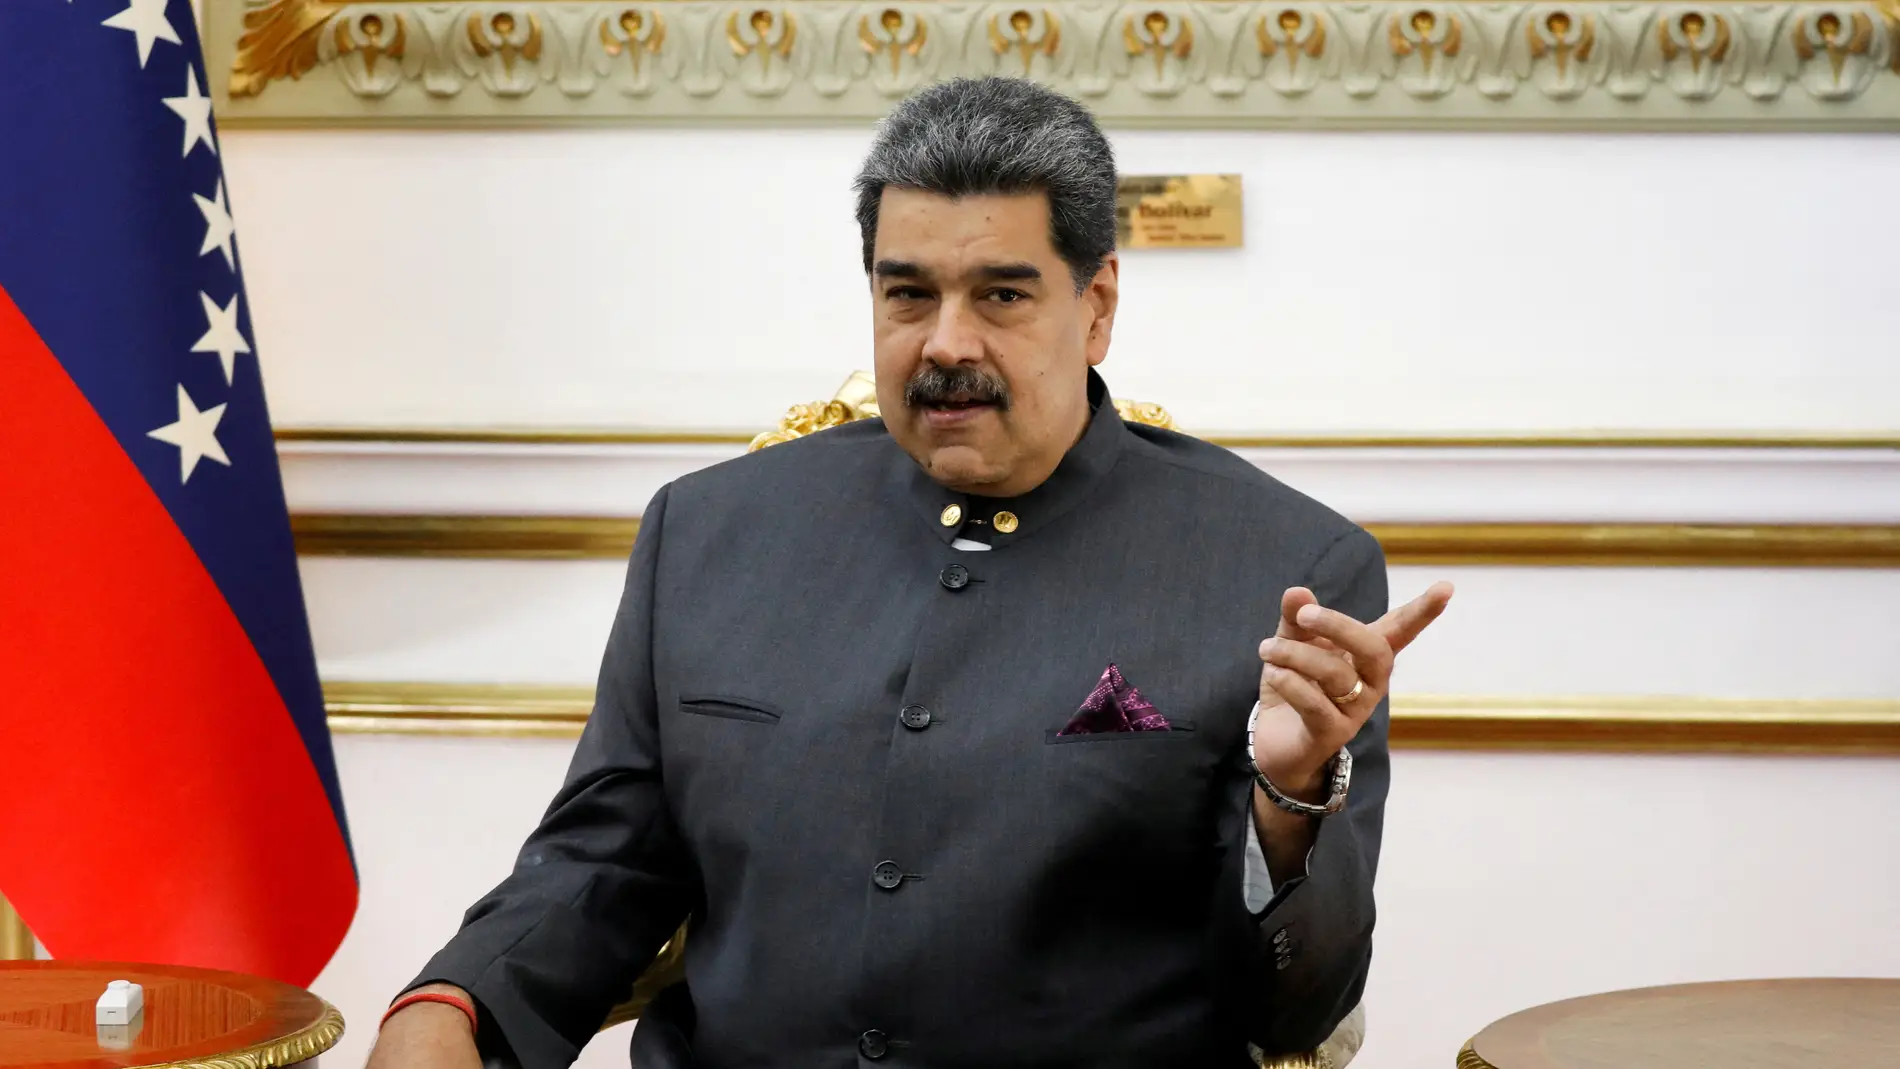 El presidente de Venezuela , Nicolás Maduro, durante una reunión con el Alto Comisionado de las Naciones Unidas para los Derechos Humanos